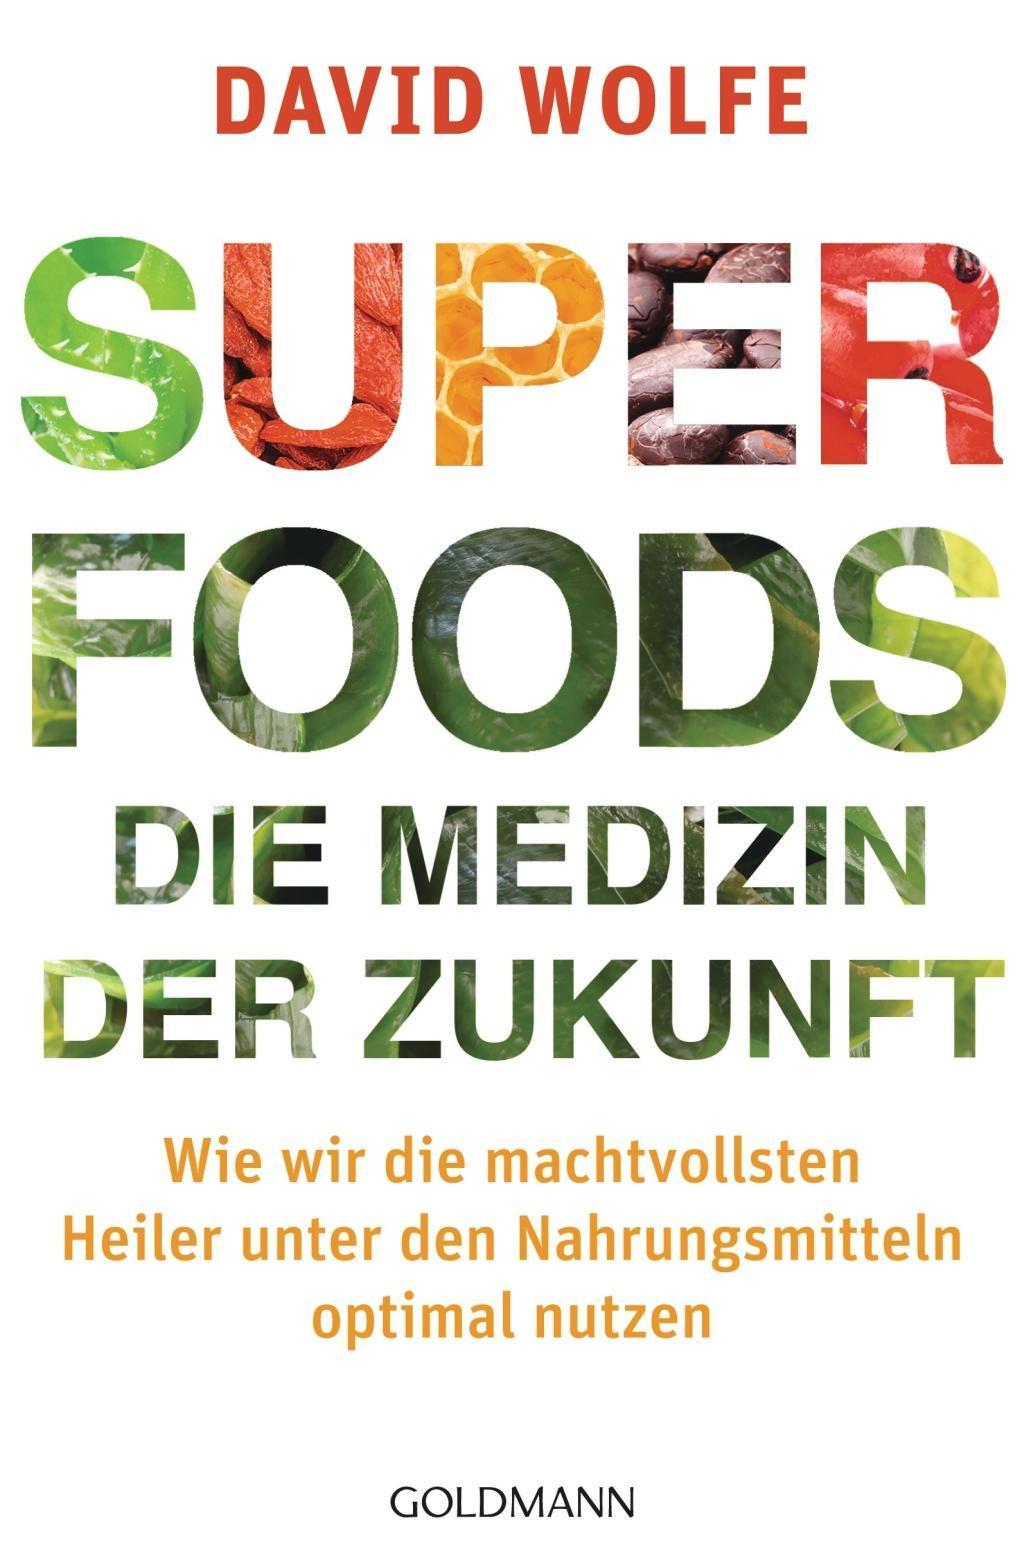 Superfoods Die Medizin der Zukunft